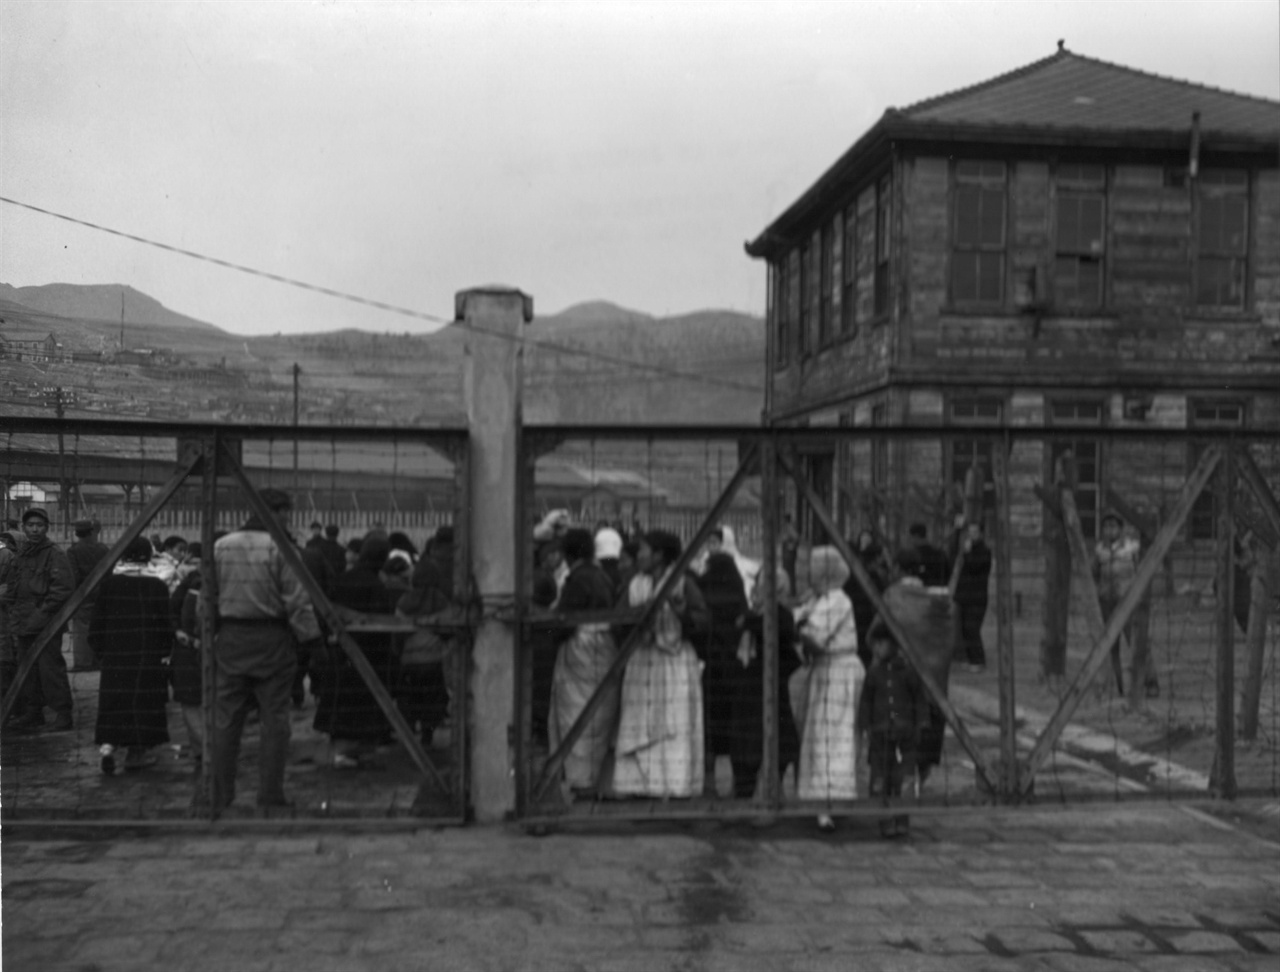  1951. 1. 8. 부산. 먼저 도착한 북한의 함경도 피란민들이 부두 철문 앞에서 뒤따라 올 가족 친지를 하염없이 기다리고 있다.